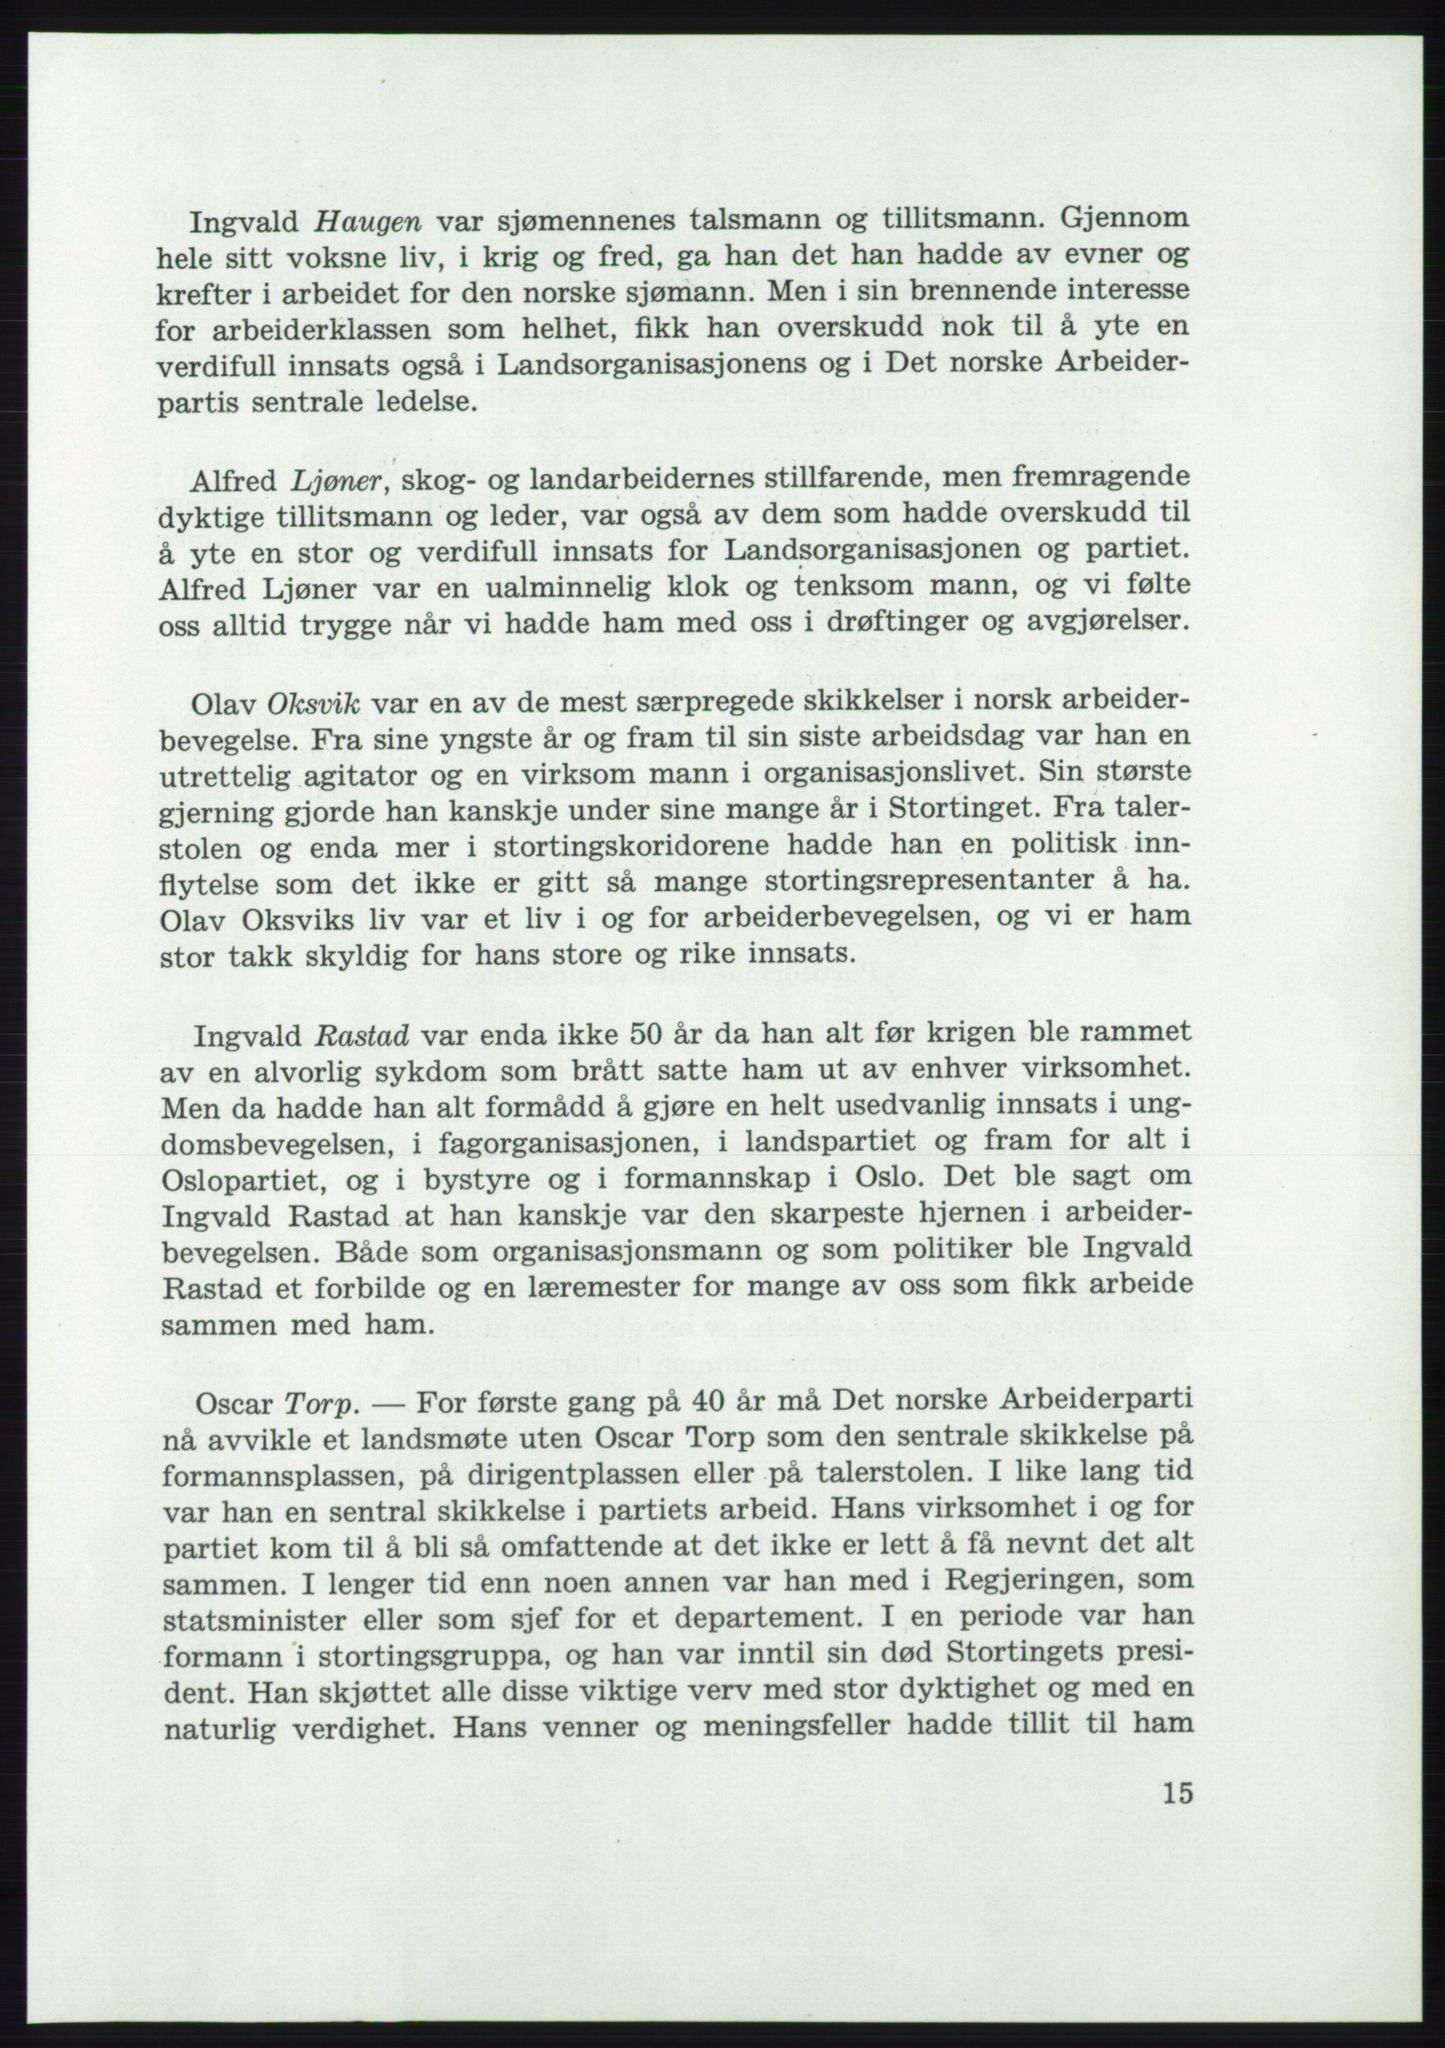 Det norske Arbeiderparti - publikasjoner, AAB/-/-/-: Protokoll over forhandlingene på det 37. ordinære landsmøte 7.-9. mai 1959 i Oslo, 1959, s. 15